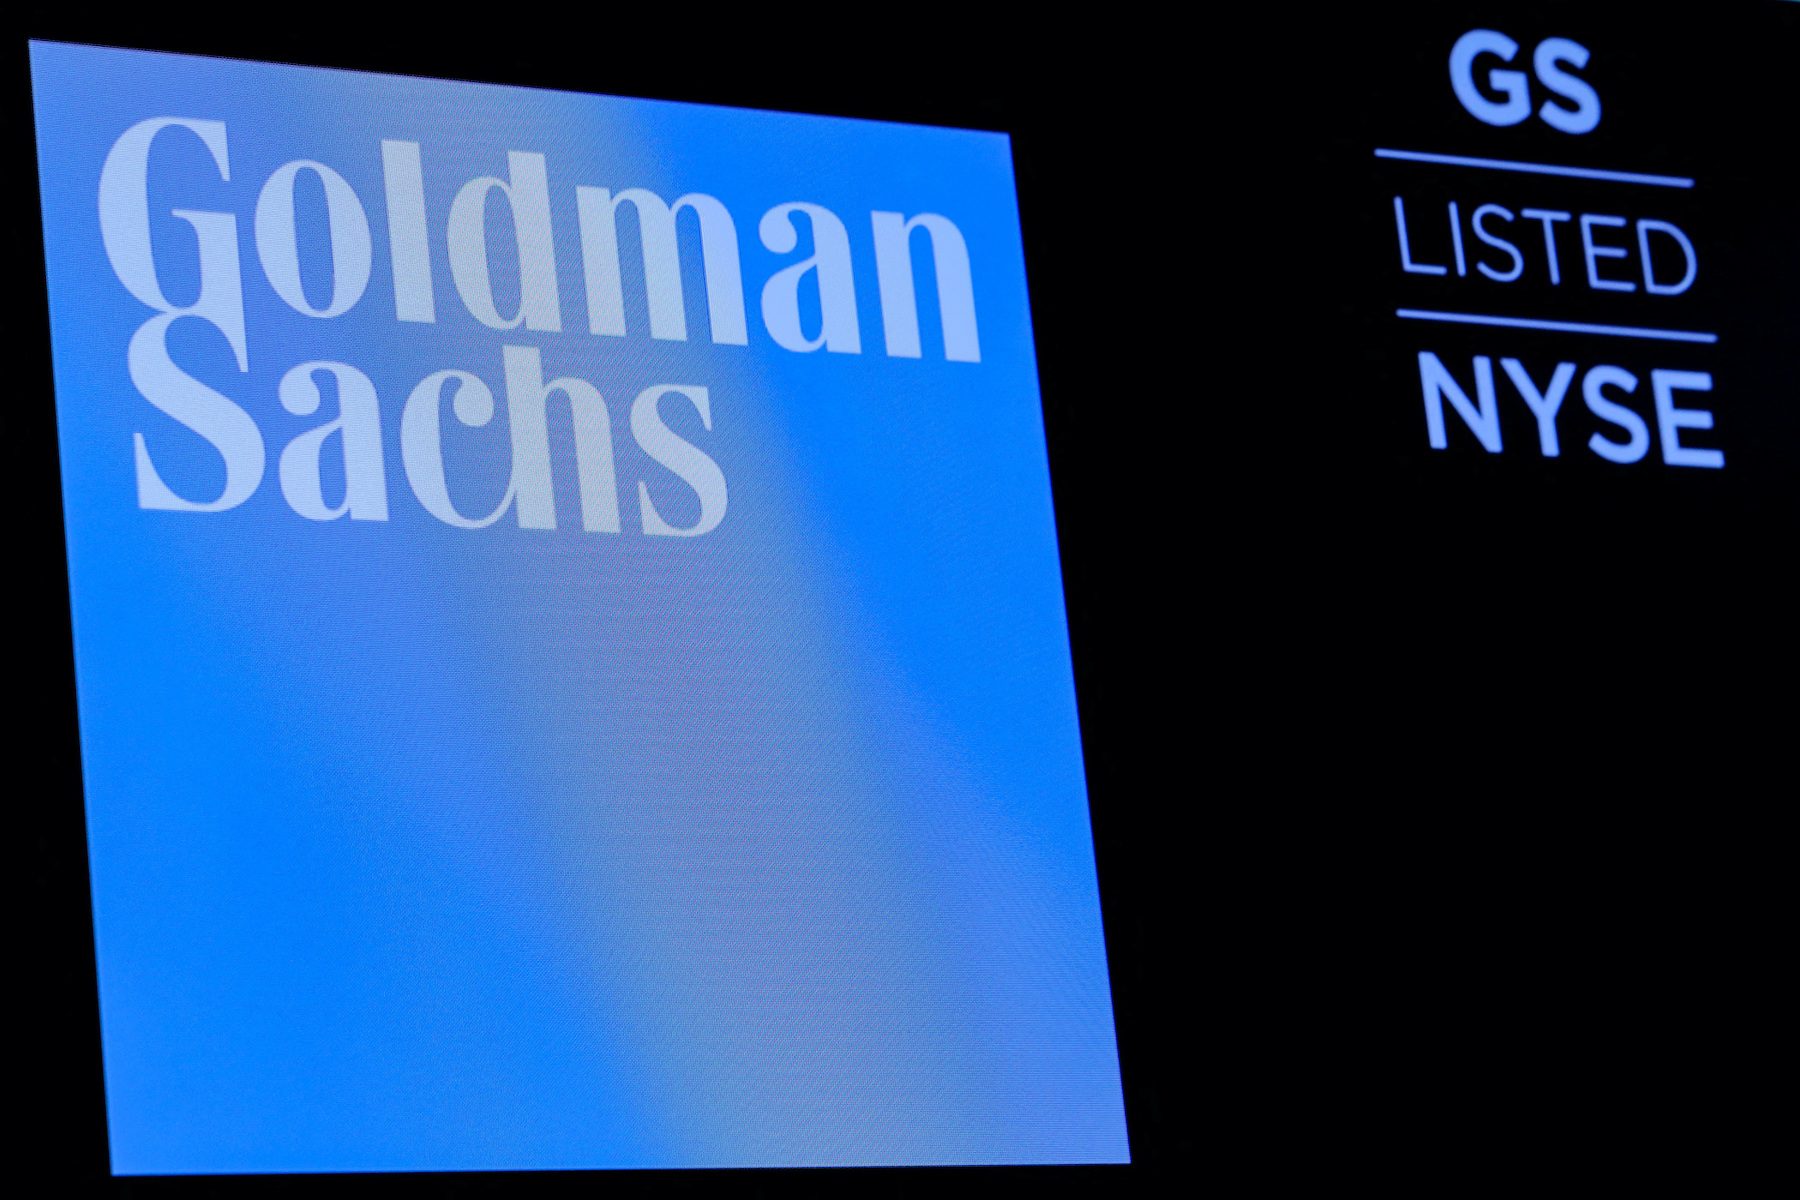 Goldman warns it may slow hiring, cut expenses as deals slump